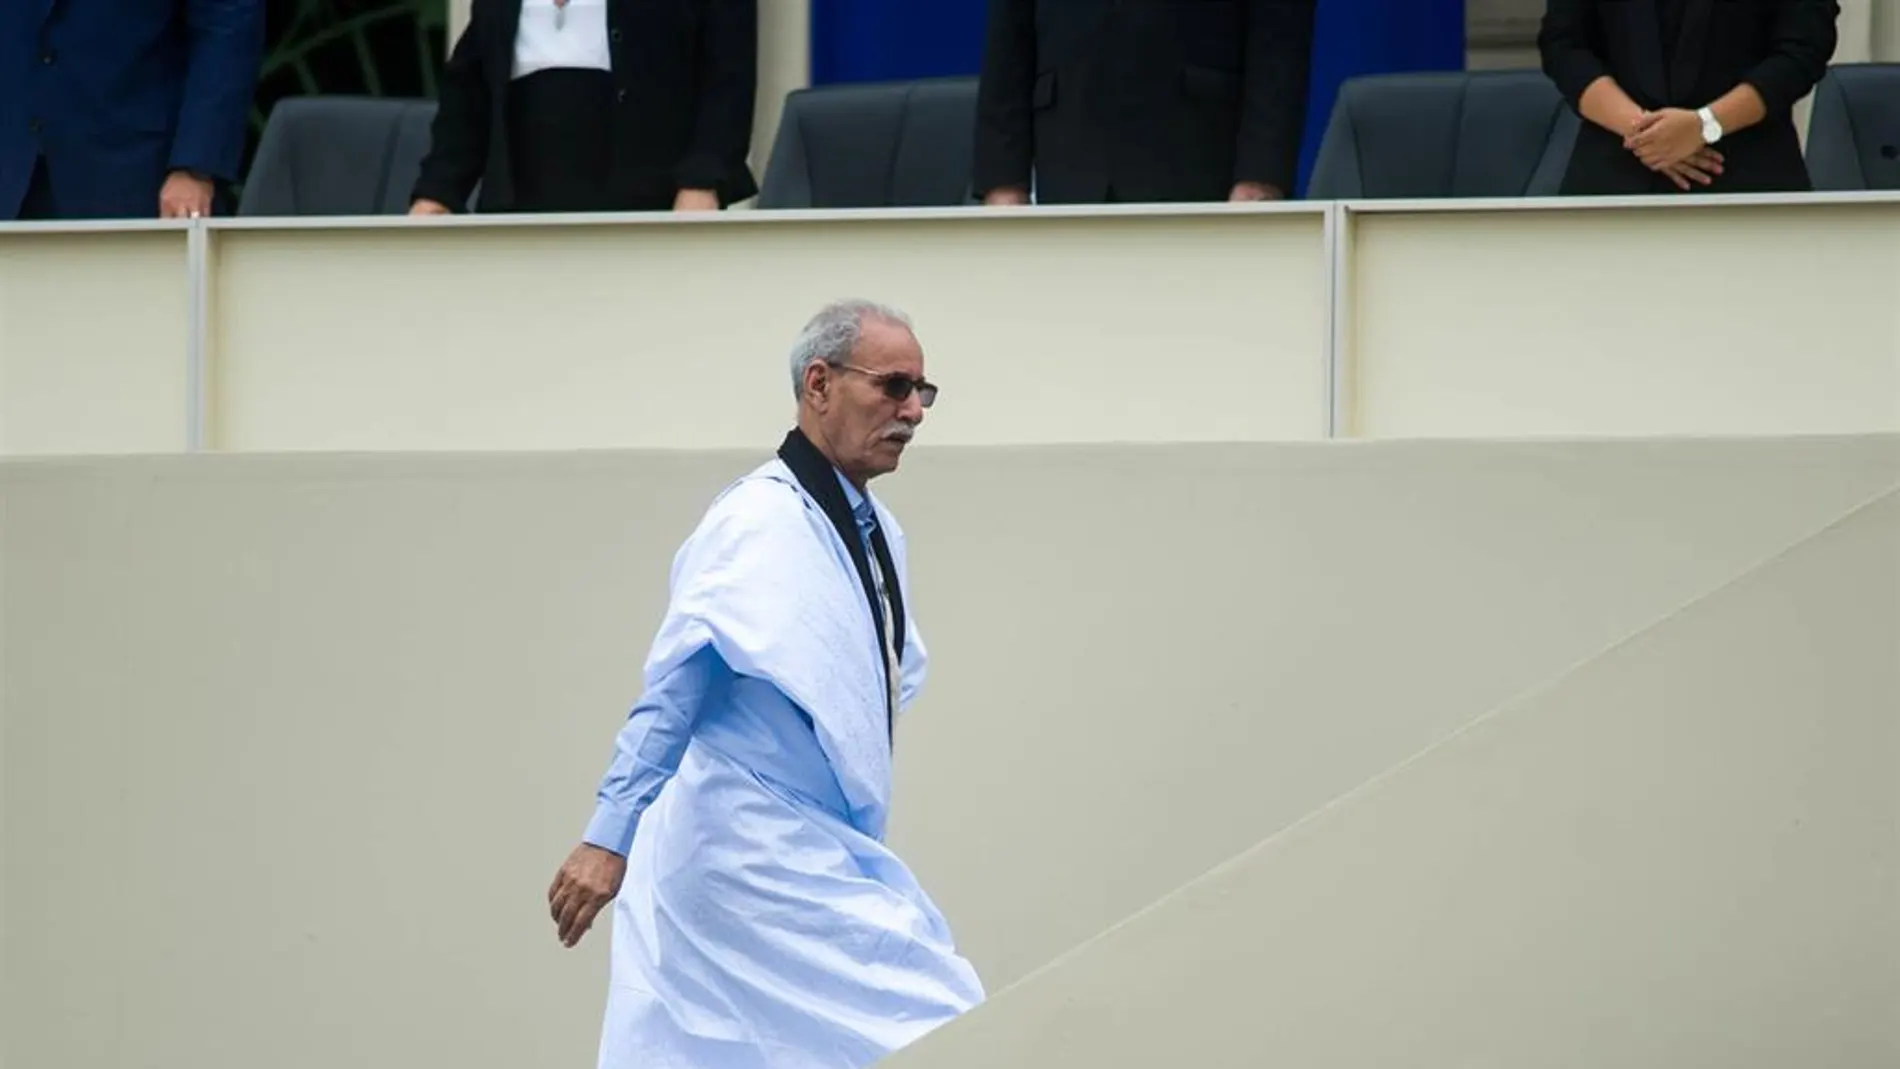 El líder del Polisario, Brahim Ghali